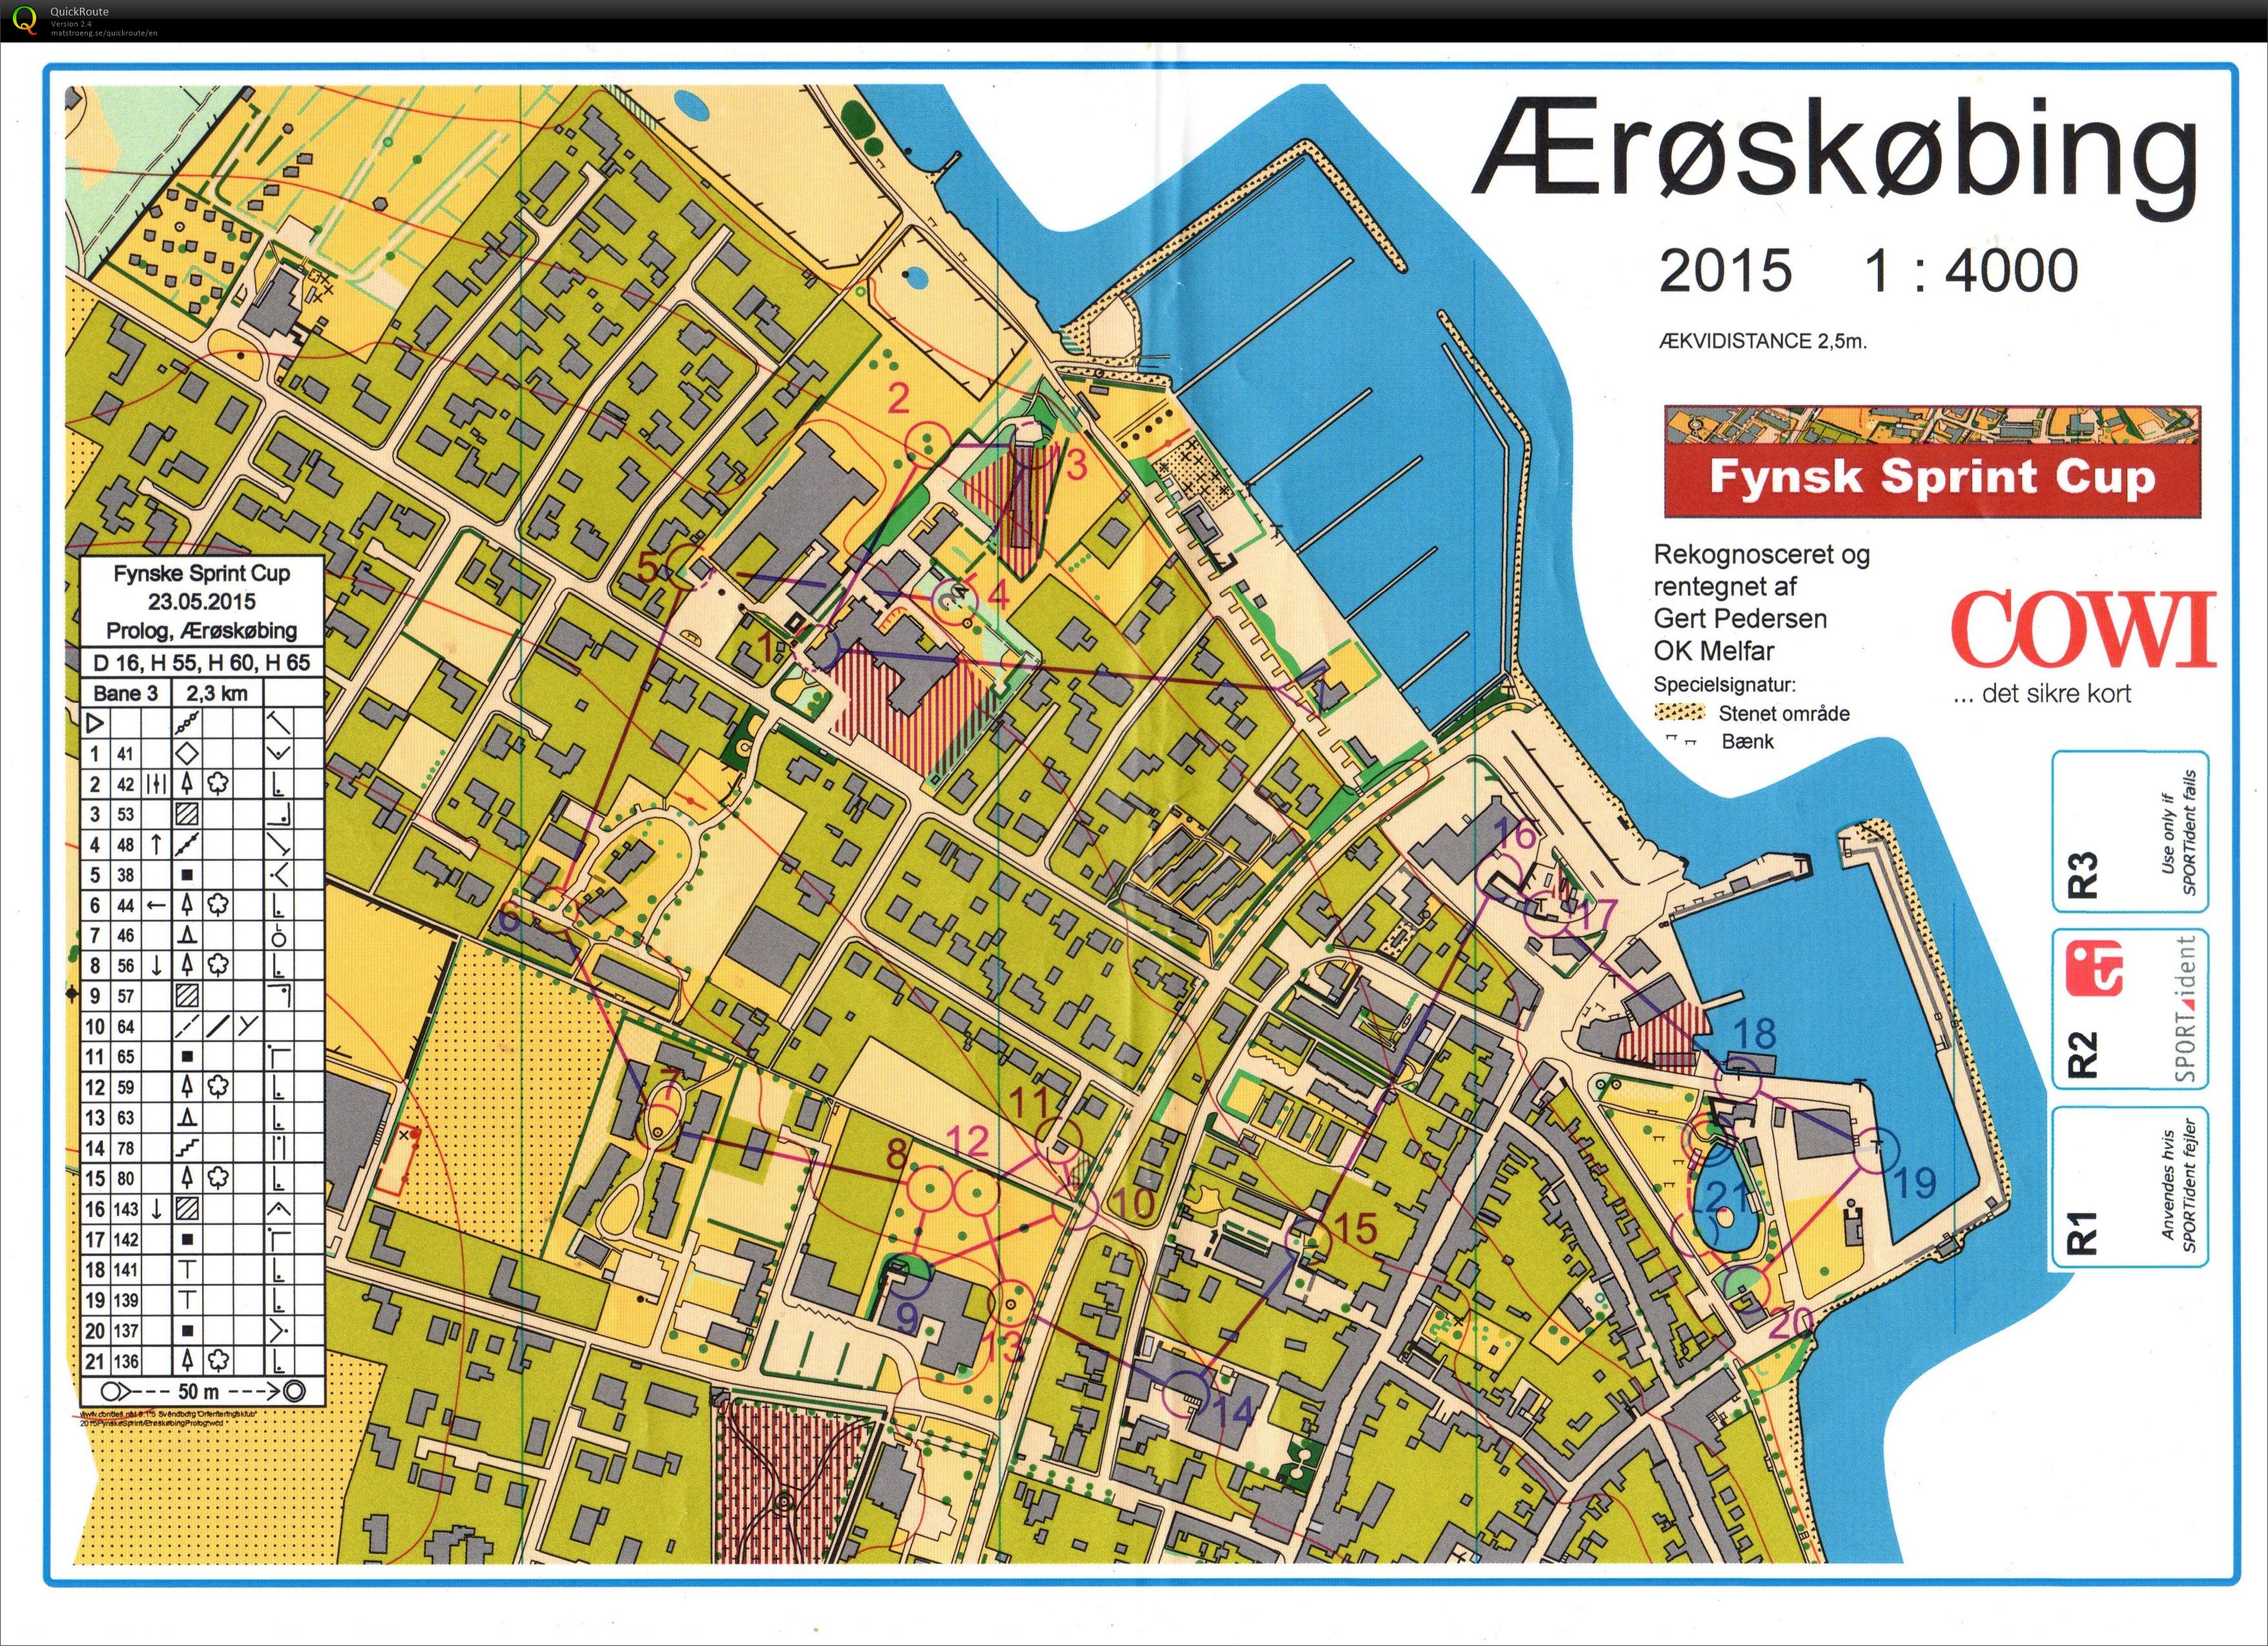 Fynsk Sprint Cup - prolog1 (23-05-2015)